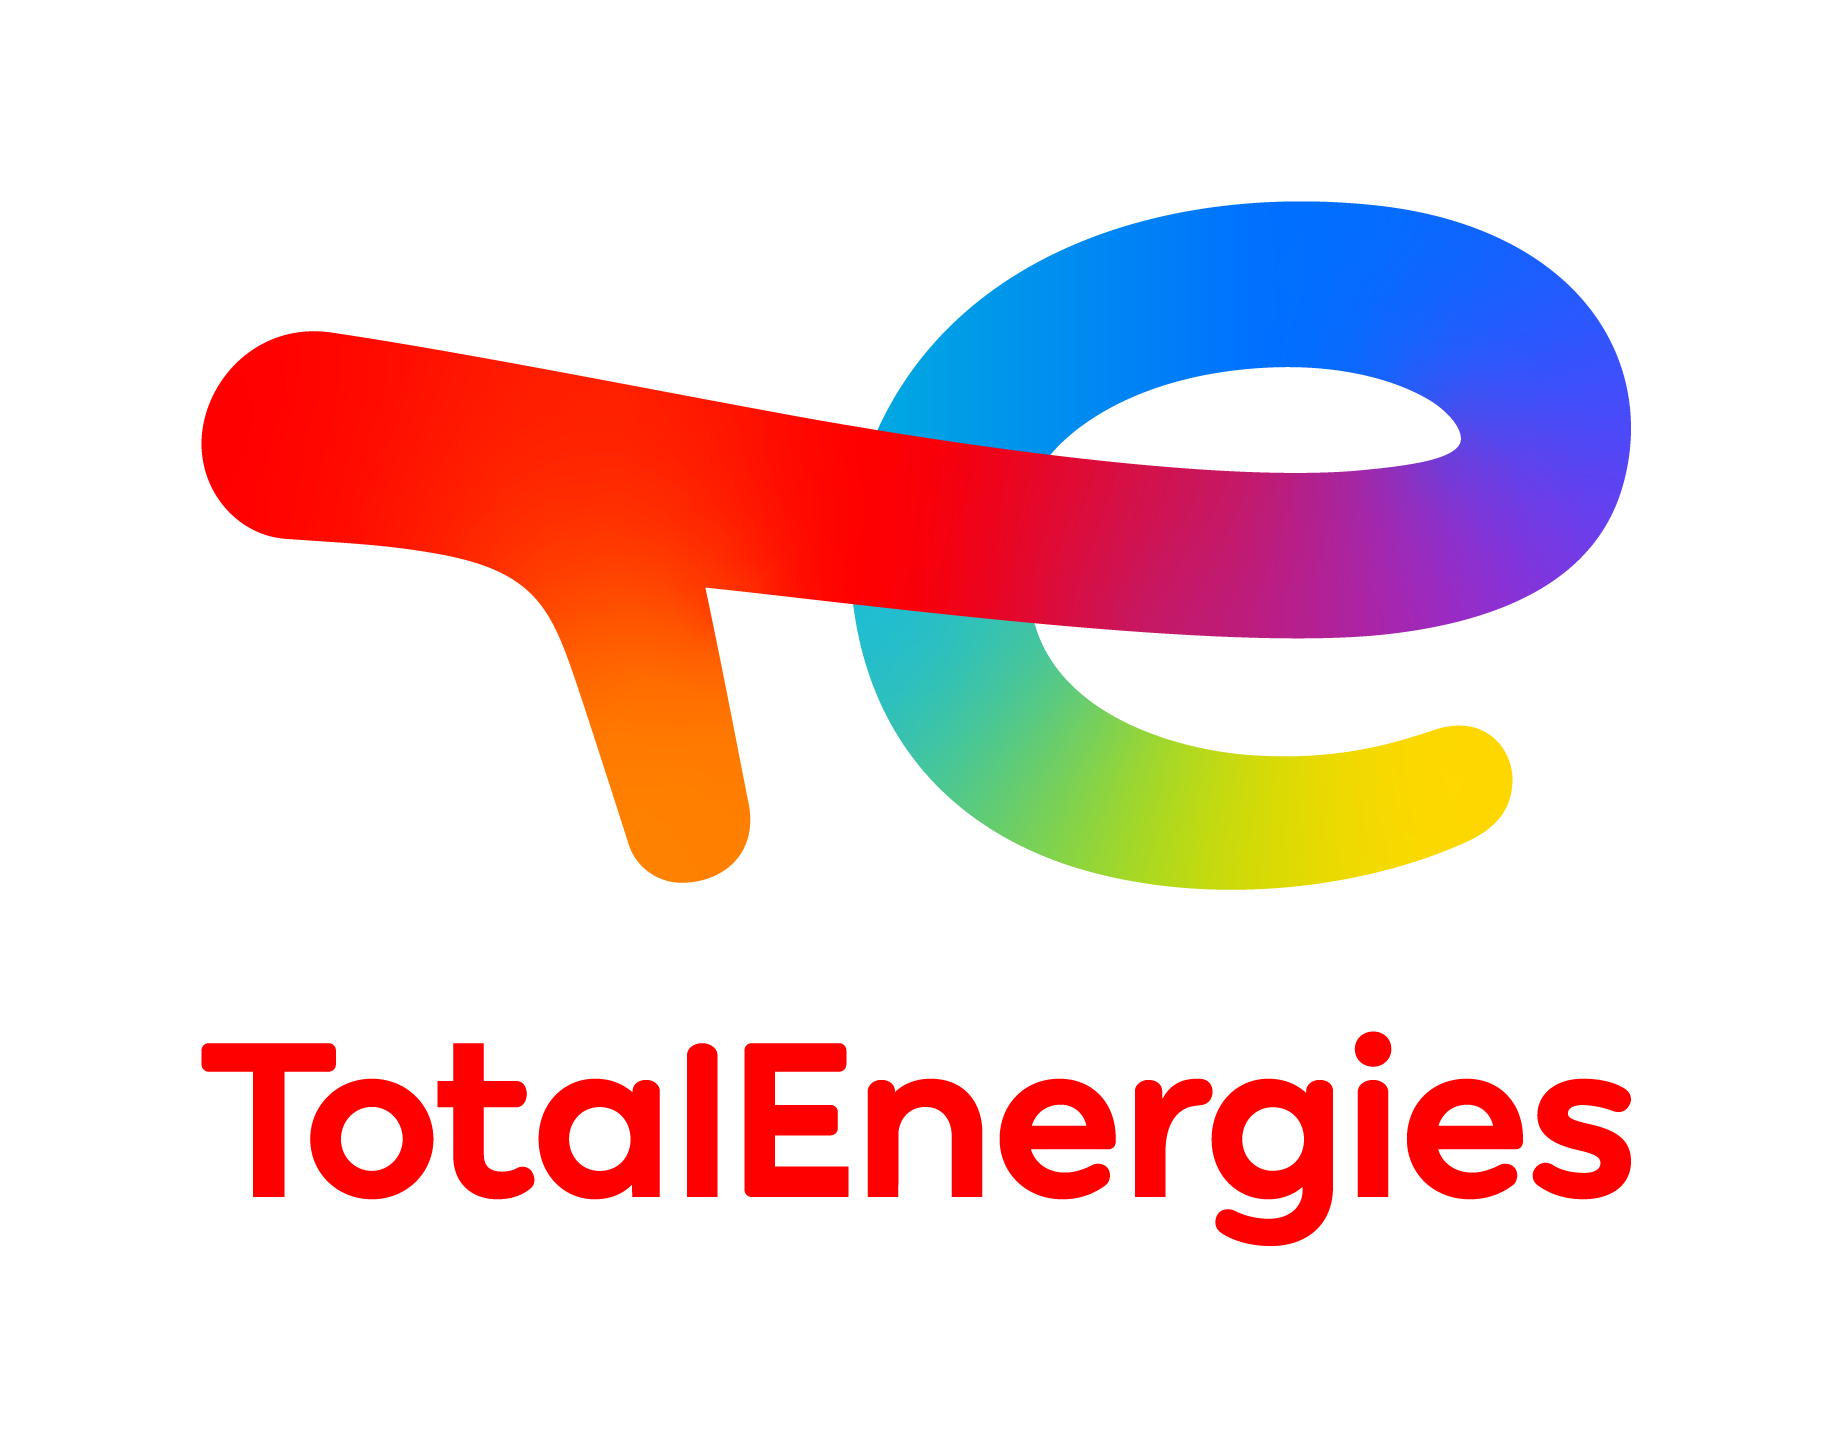 TotalEnergies Marketing Tunisie : promotion de la mobilité électrique en Tunisie